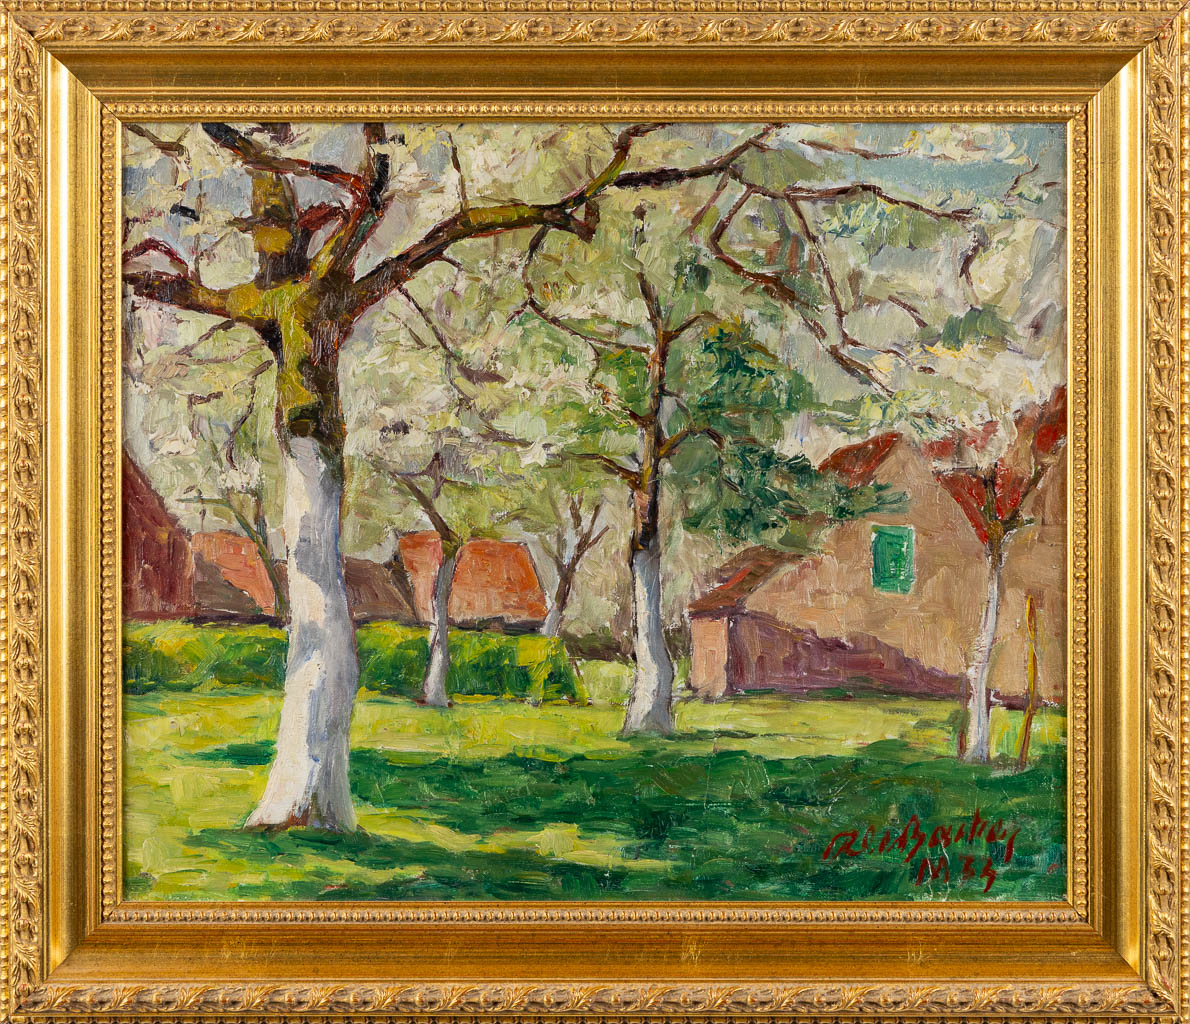 Roger DE BACKER (1897-1984) 'Spring' 1934. (W:60 x H:50 cm)